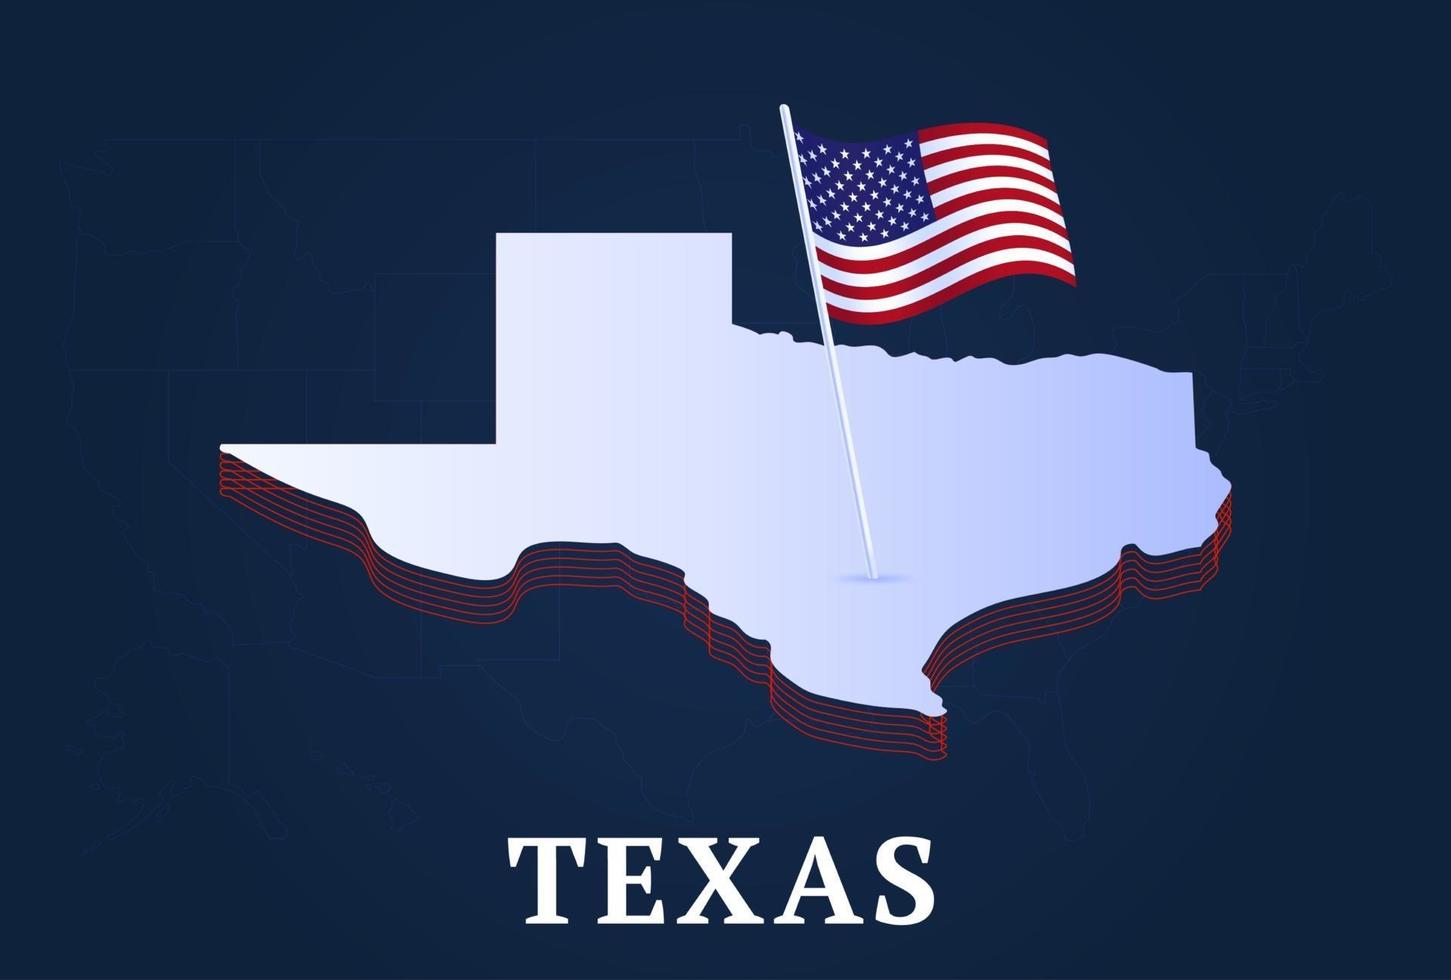 carte isométrique de l'état du texas et drapeau national des états-unis forme isométrique 3d de l'illustration vectorielle de l'état américain vecteur